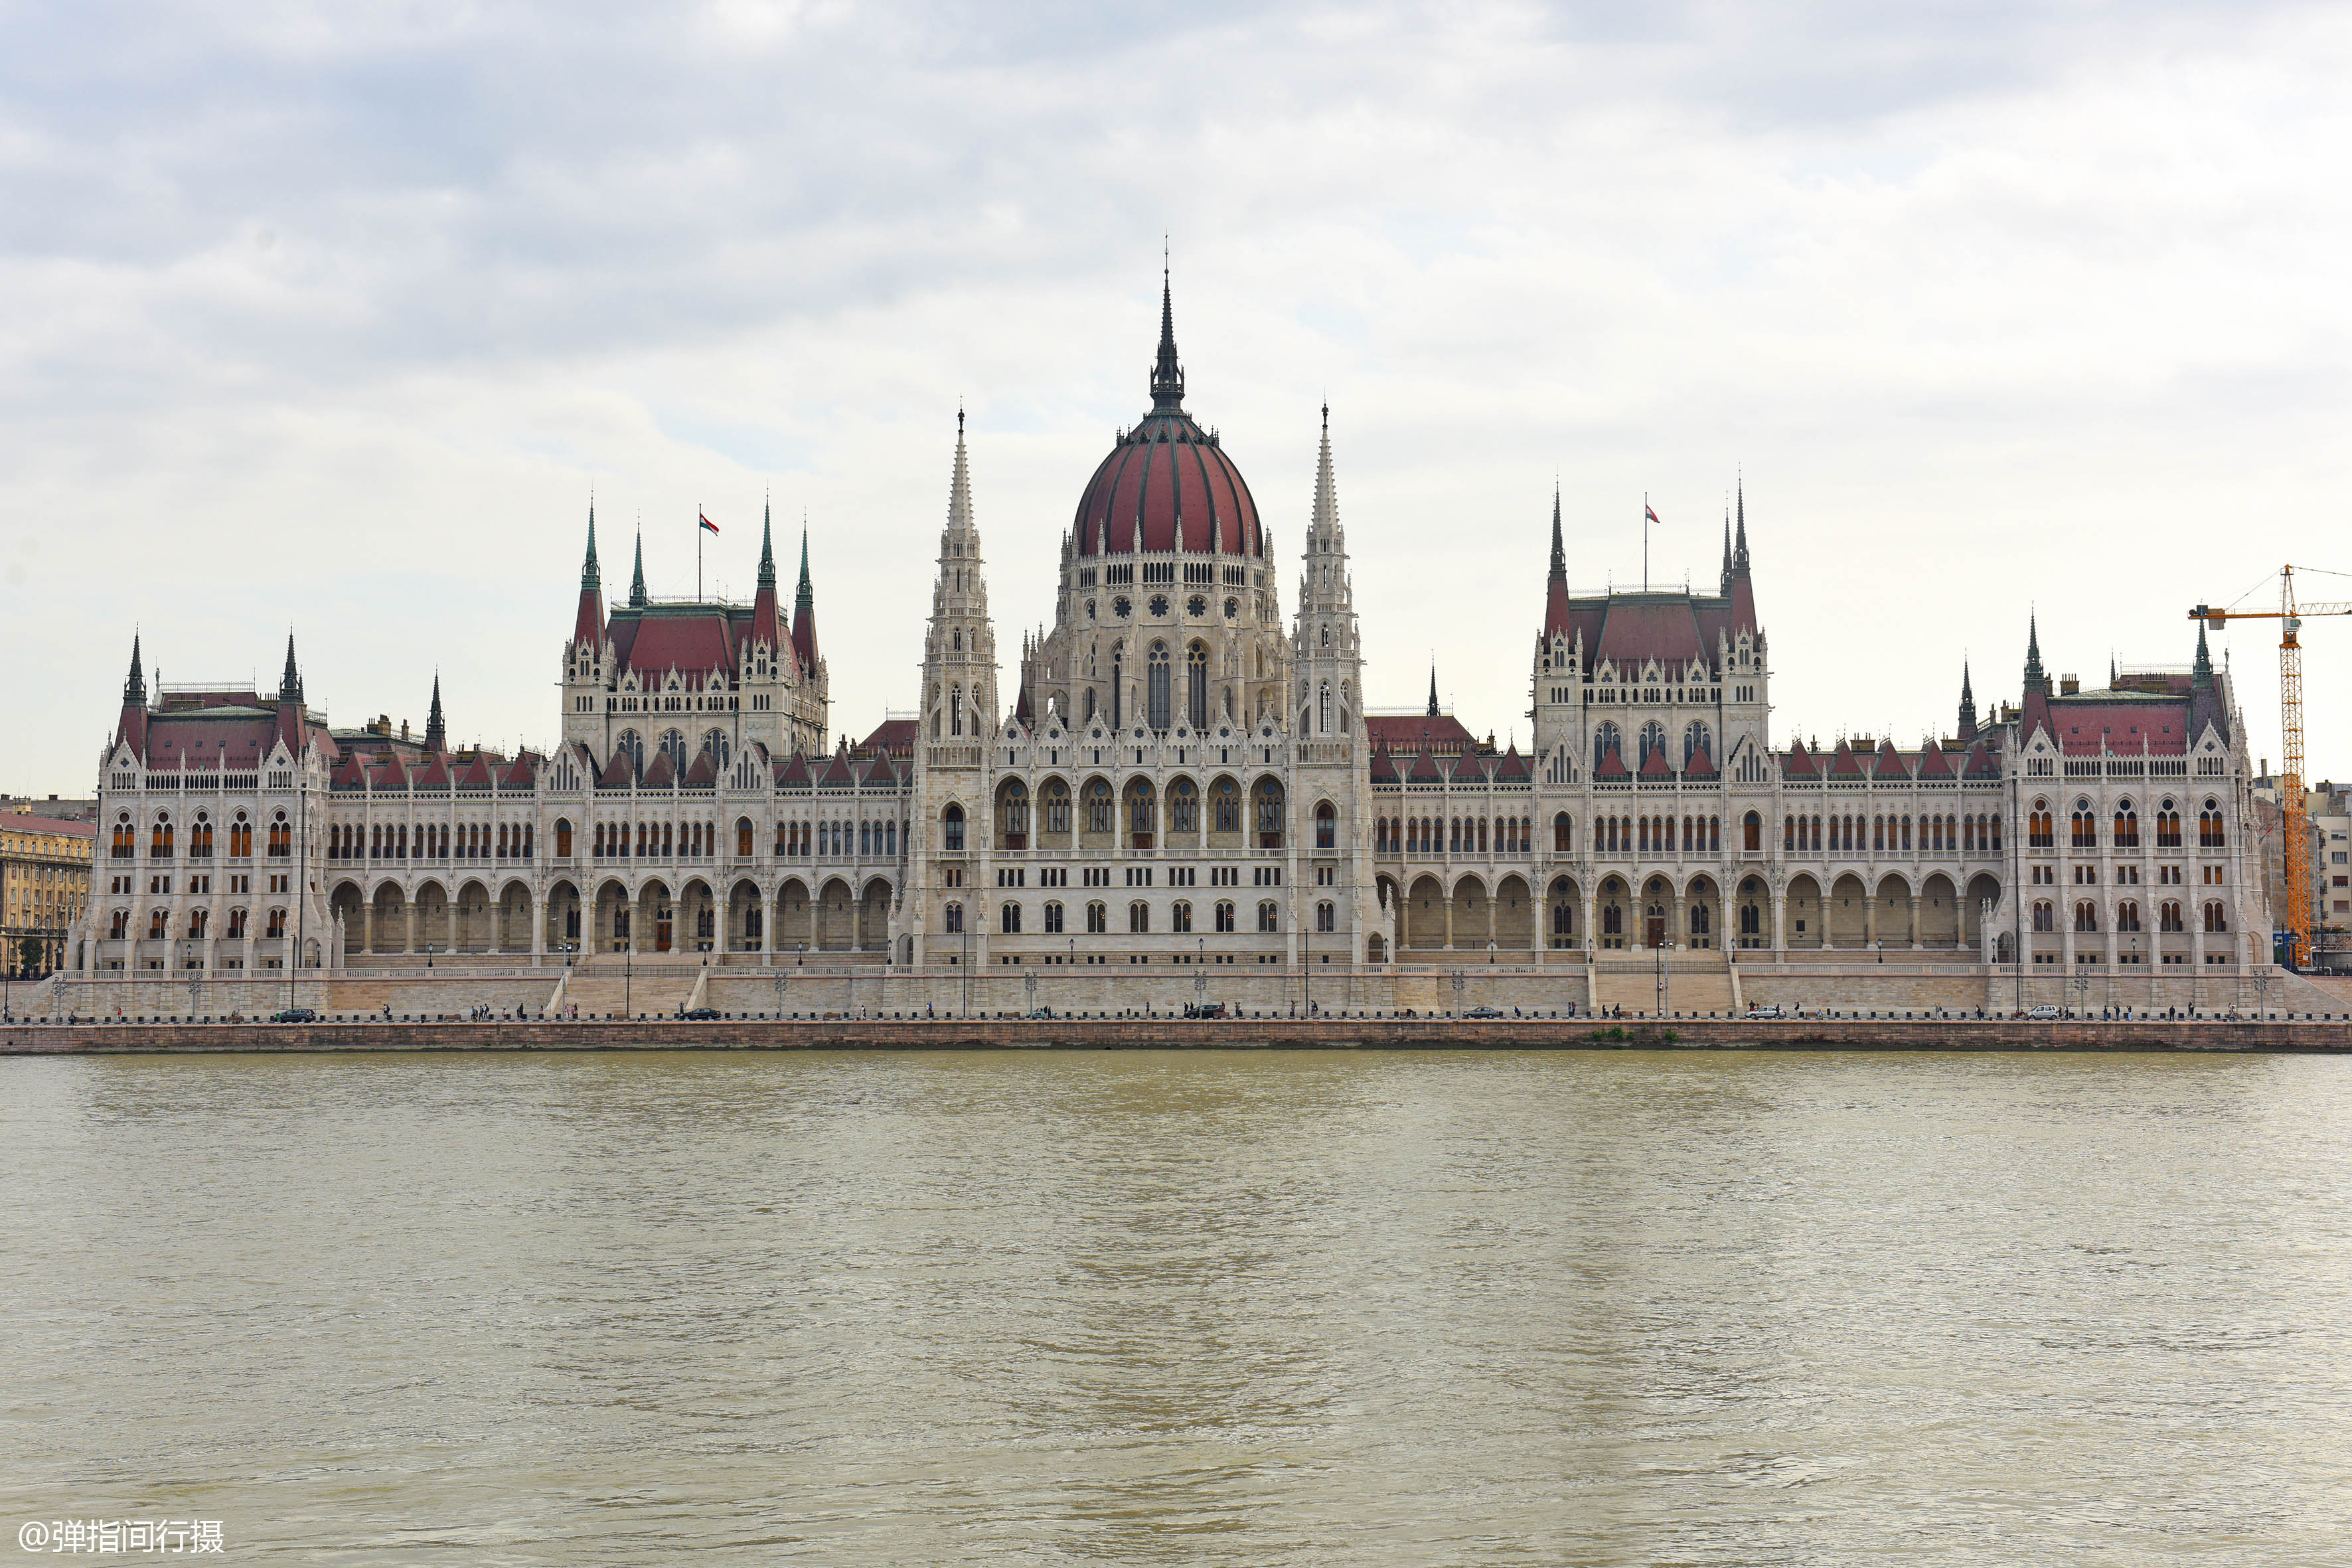 原创匈牙利浪漫地标如熠熠生辉的皇冠是多瑙河畔的最美建筑